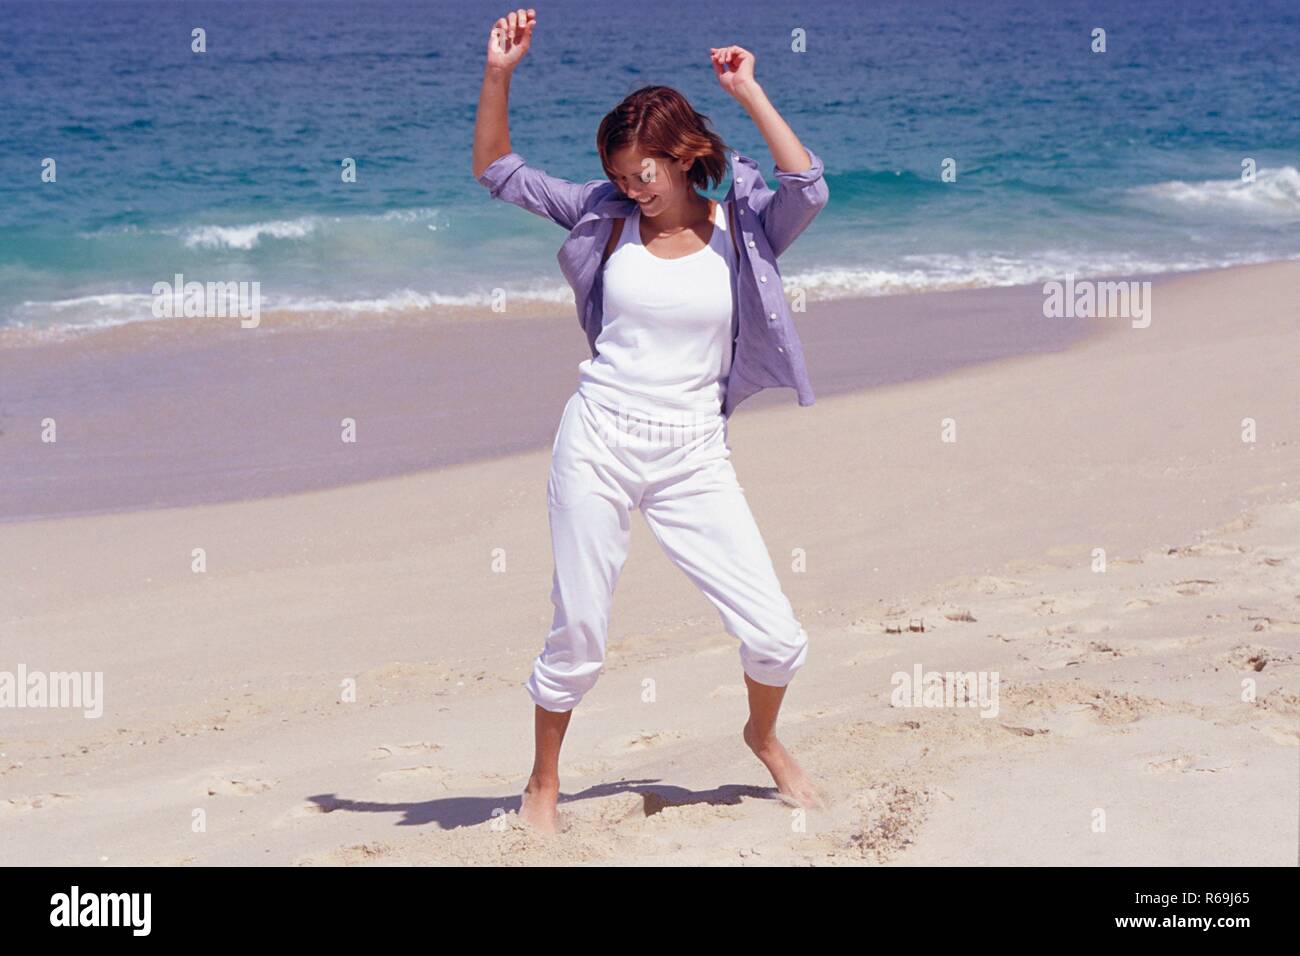 Strandszene, Portrait, Ganzfigur, junge Frau mit glatten braunen Haaren, bekleidet mit weisser Hose, T-Shirt und blauem Hemd tanzt barfuss am Strand Stock Photo